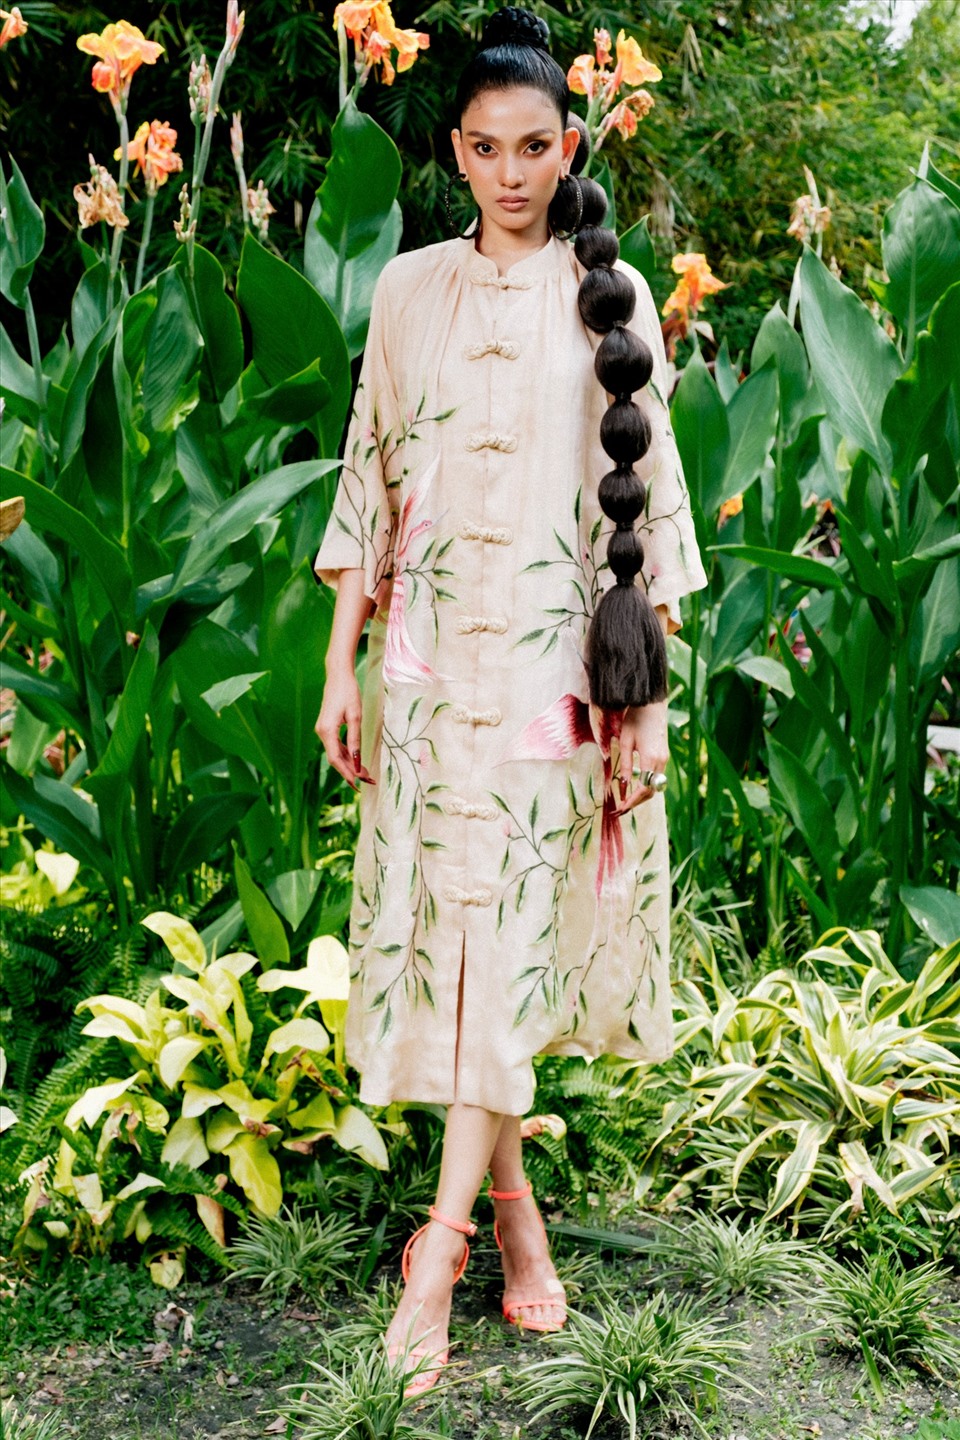 Ở tuổi 34, Trương Thị May vẫn giữ vững phong độ và mang tới những màu sắc thú vị trong giới mộ điệu thời trang. Ảnh: NSCC